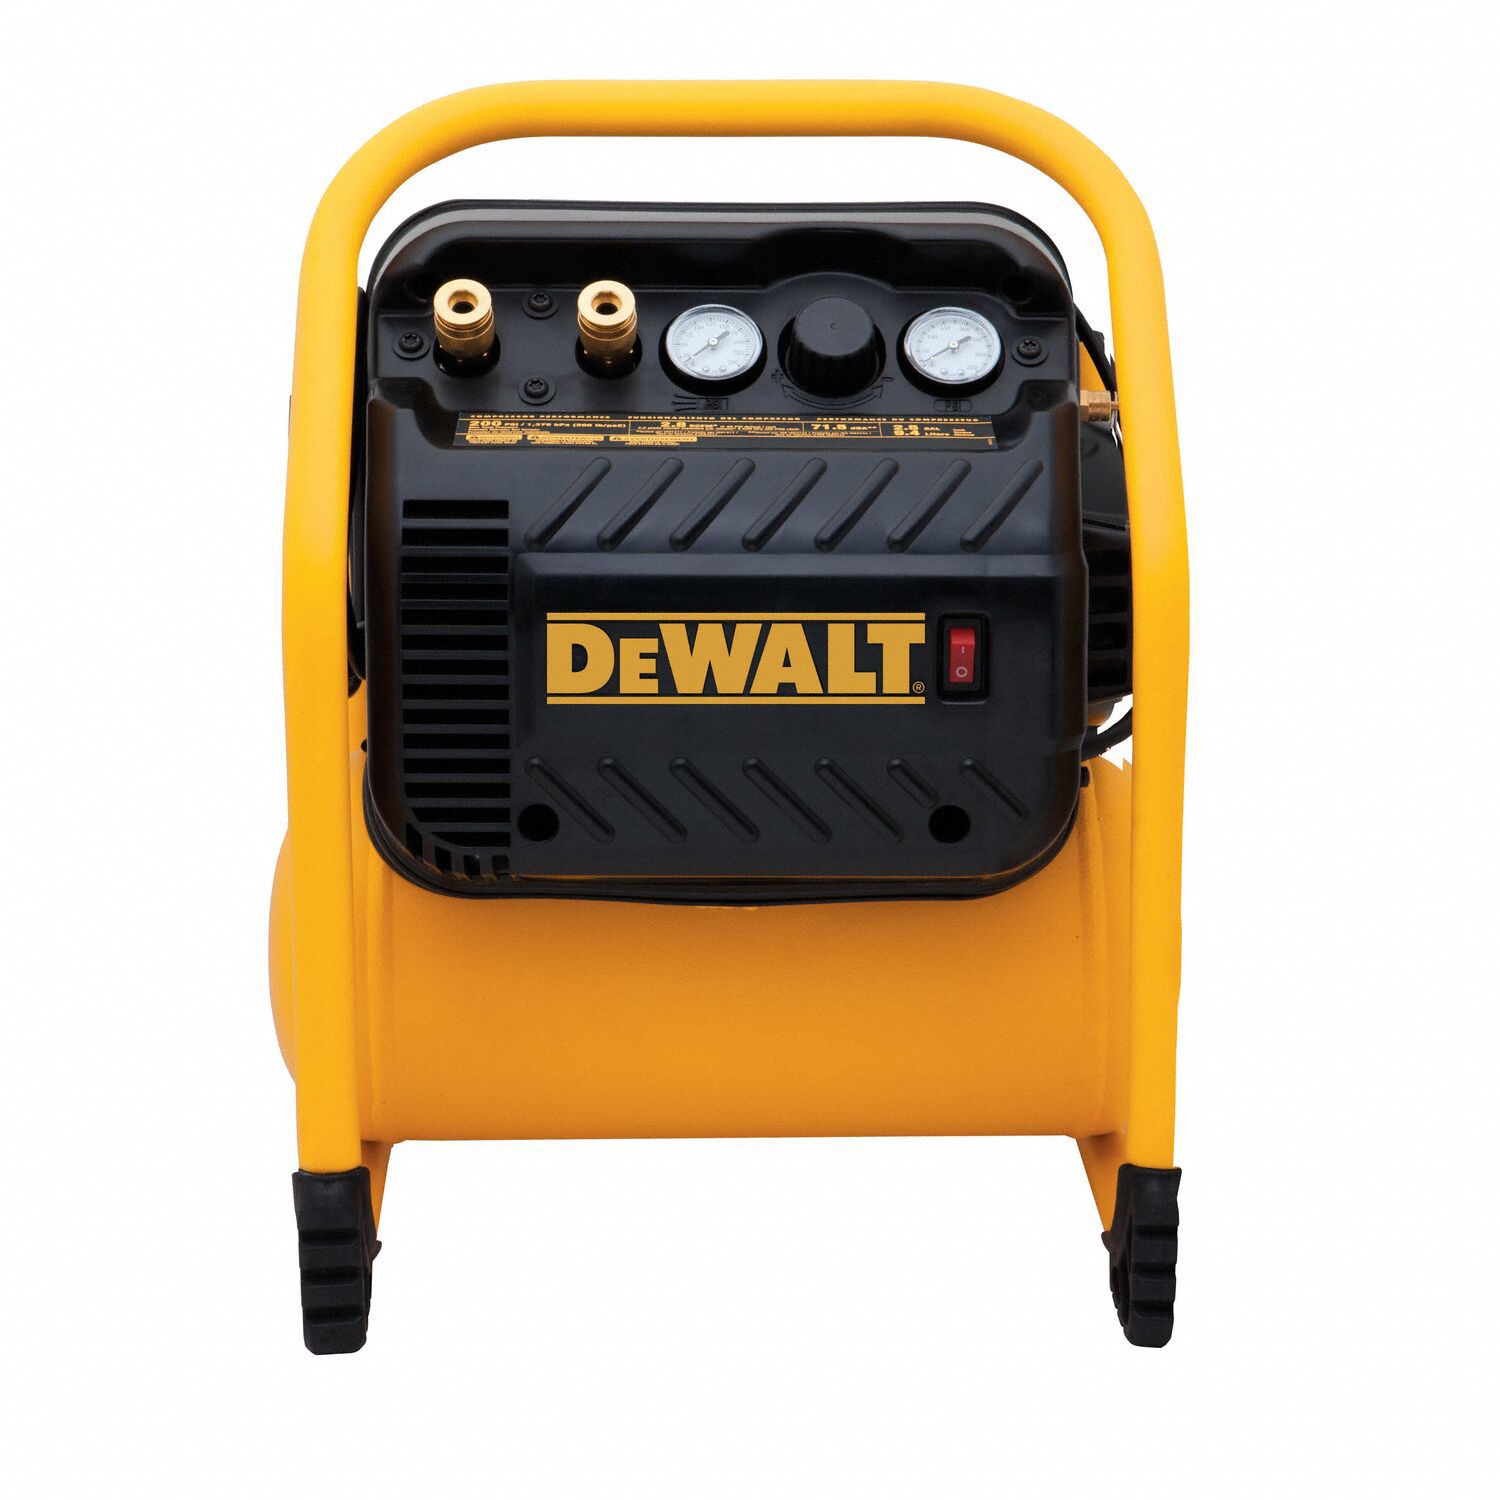 hardware Stimulans Verwarren DEWALT, Quiet, Oil Free, Portable Air Compressor - 22YJ96|DWFP55130 -  Grainger